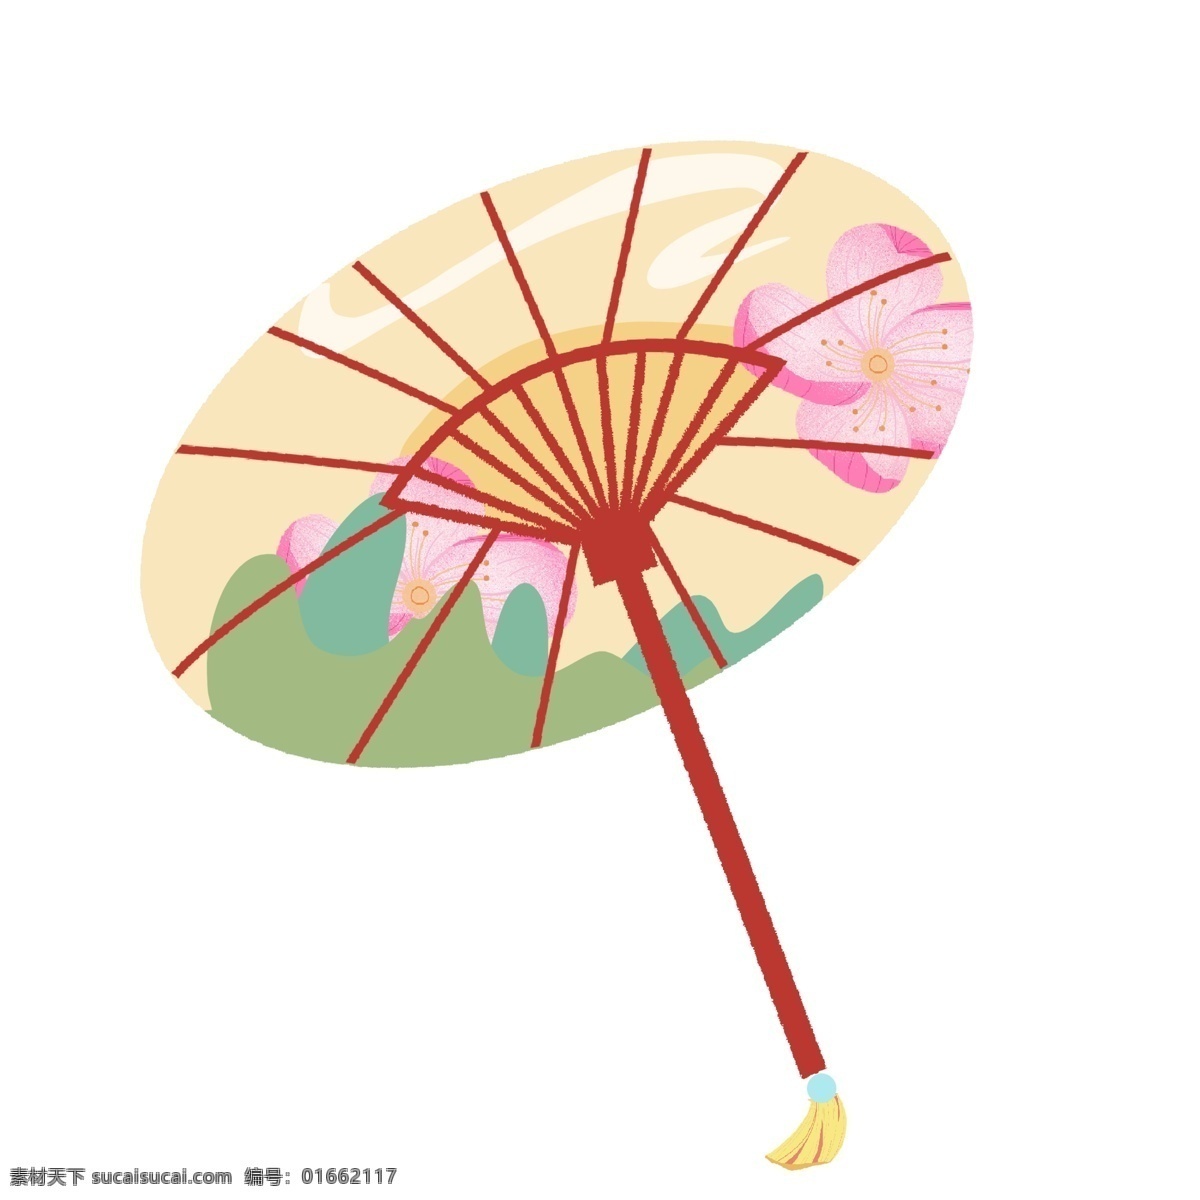 一把 荷花 油纸伞 元素 传统 生活用品 雨伞 设计元素 简约 手绘 手绘图案 装饰图案 元素设计 psd元素 伞图案